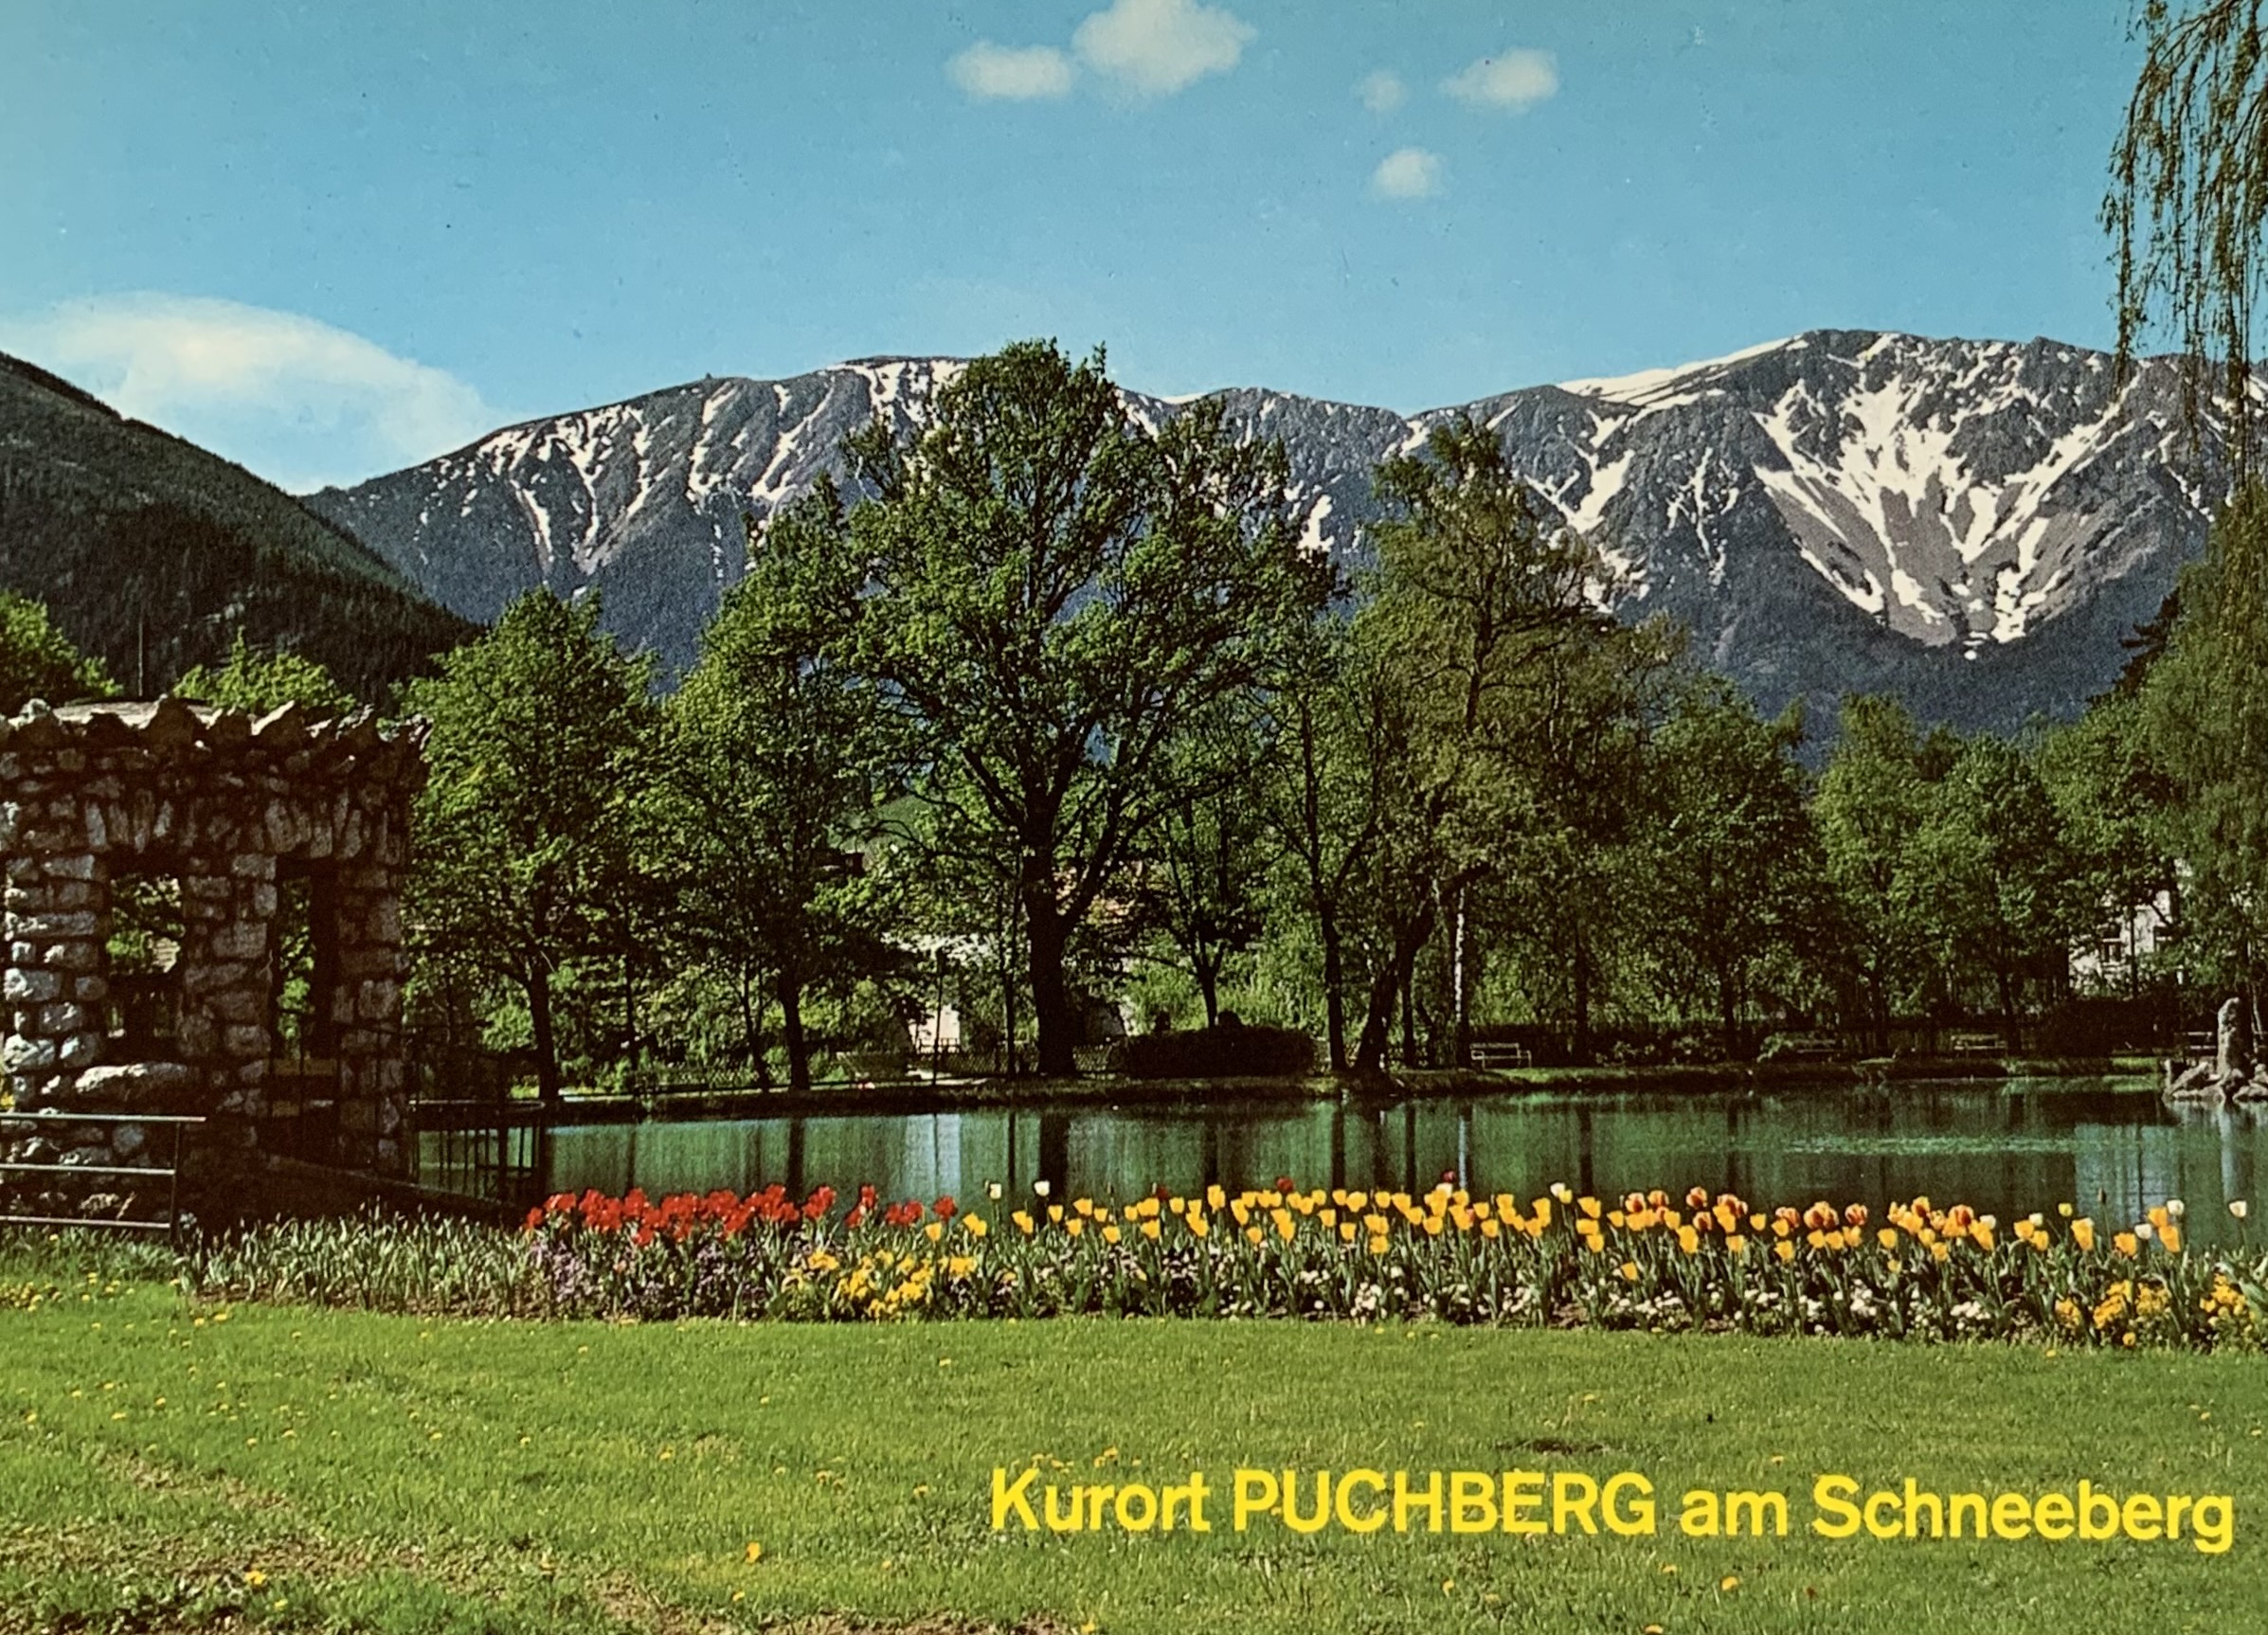 AK - Puchberg 01-2734-05